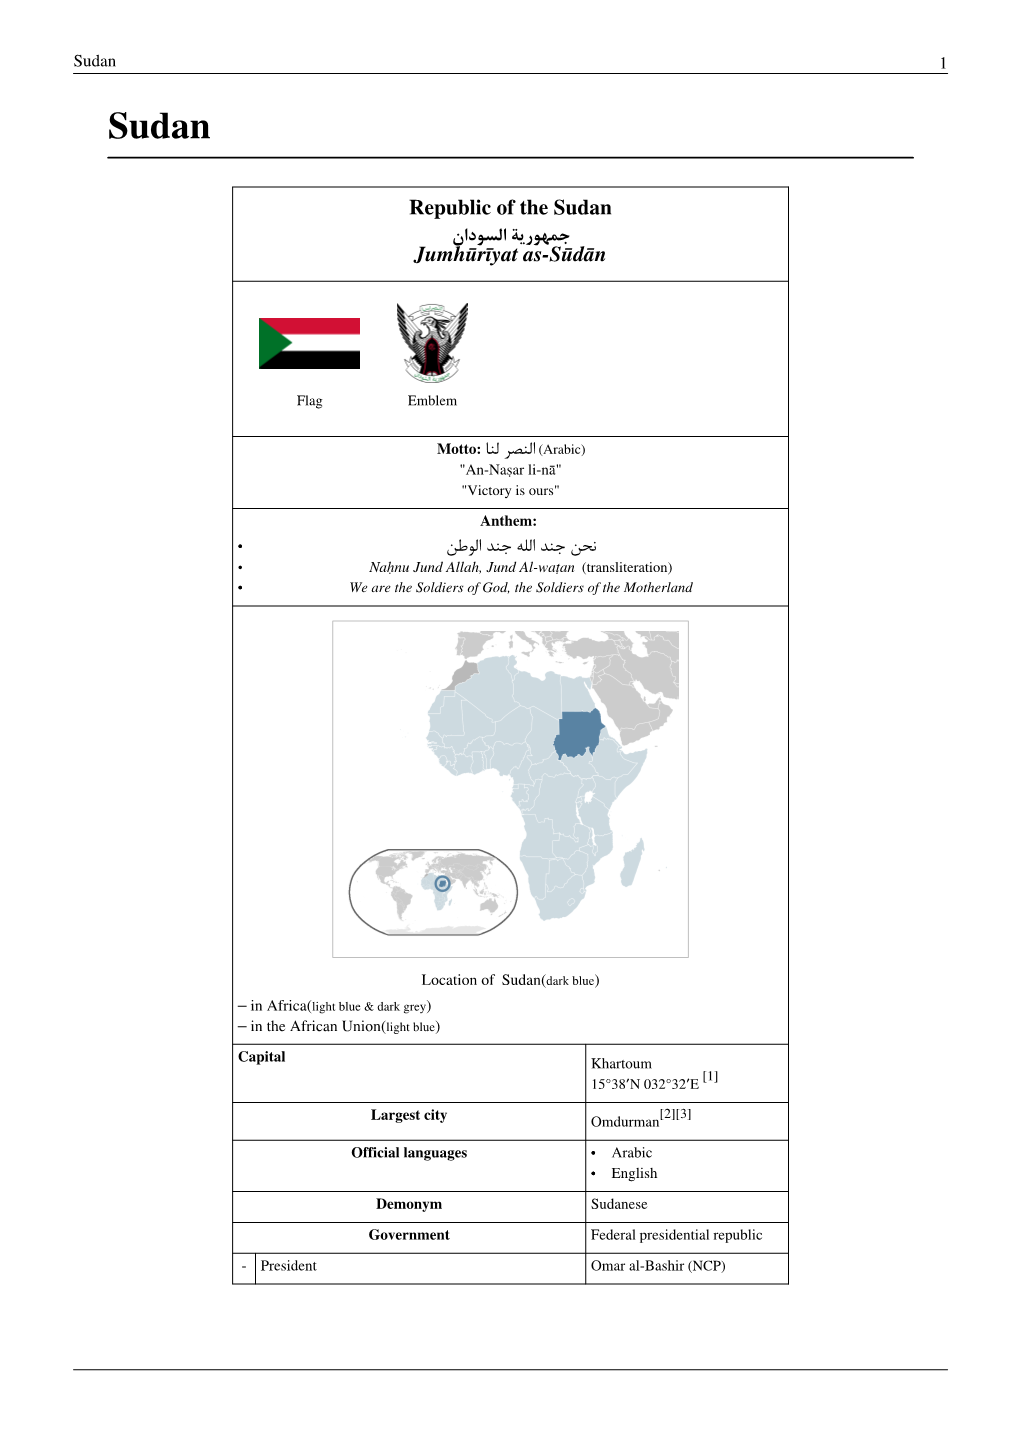 Republic of the Sudan Jumhūrīyat As-Sūdān